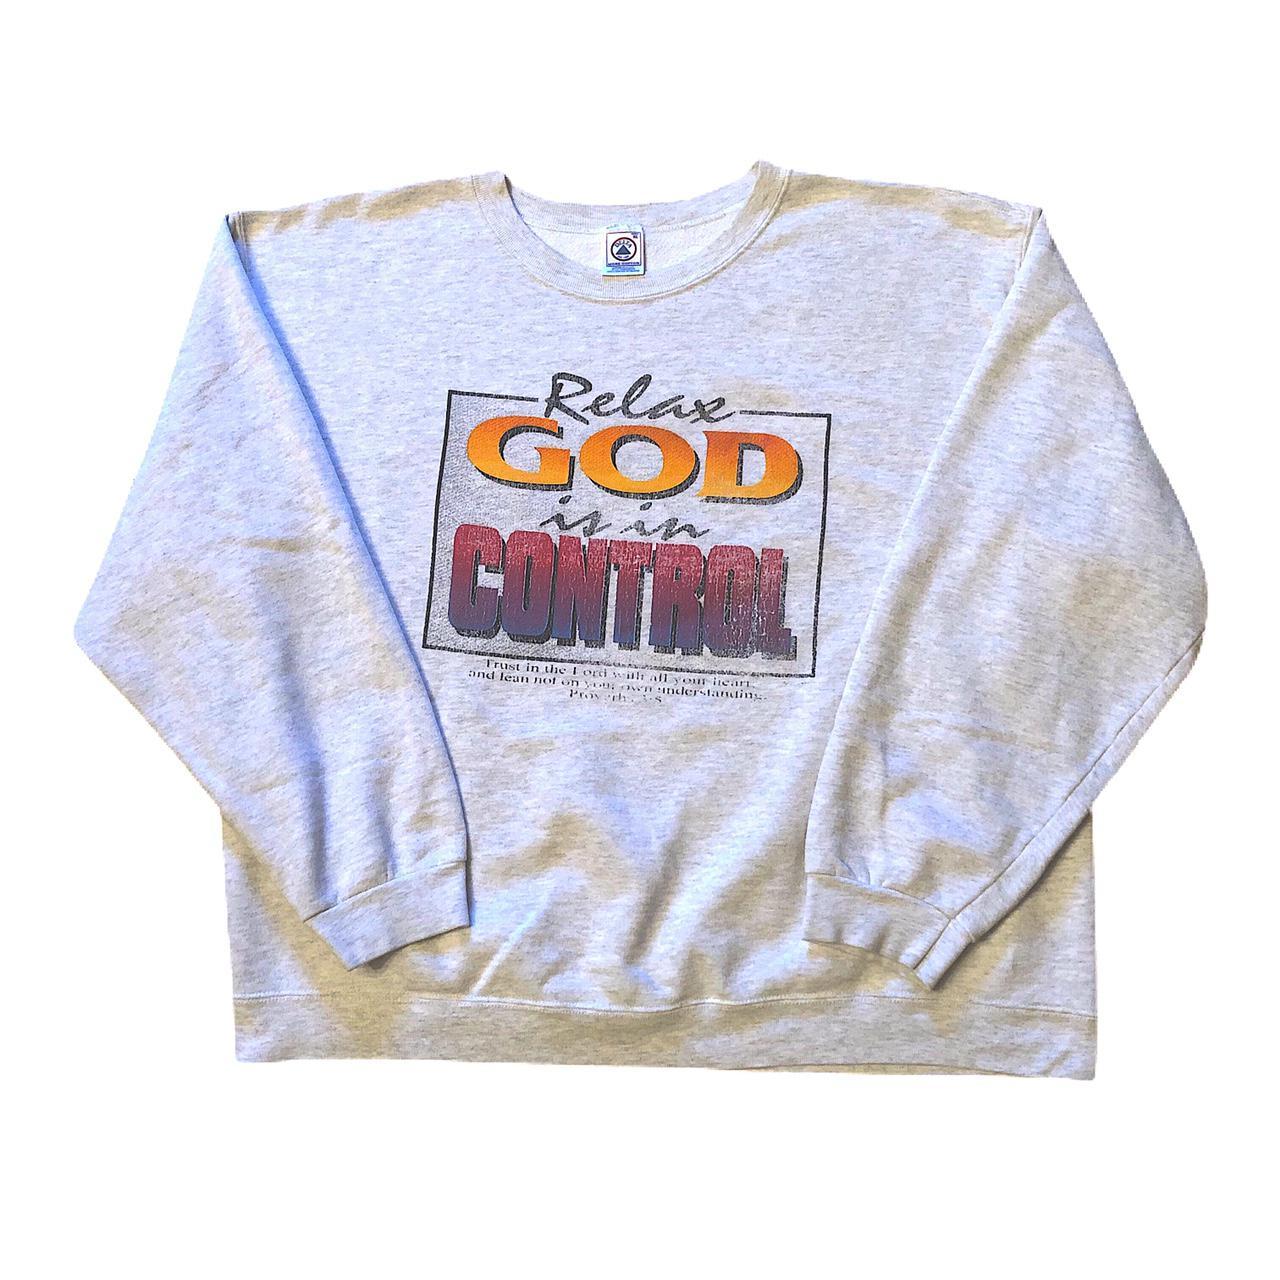 Product Image 1 - Vintage Jesus sweatshirt 
Good used